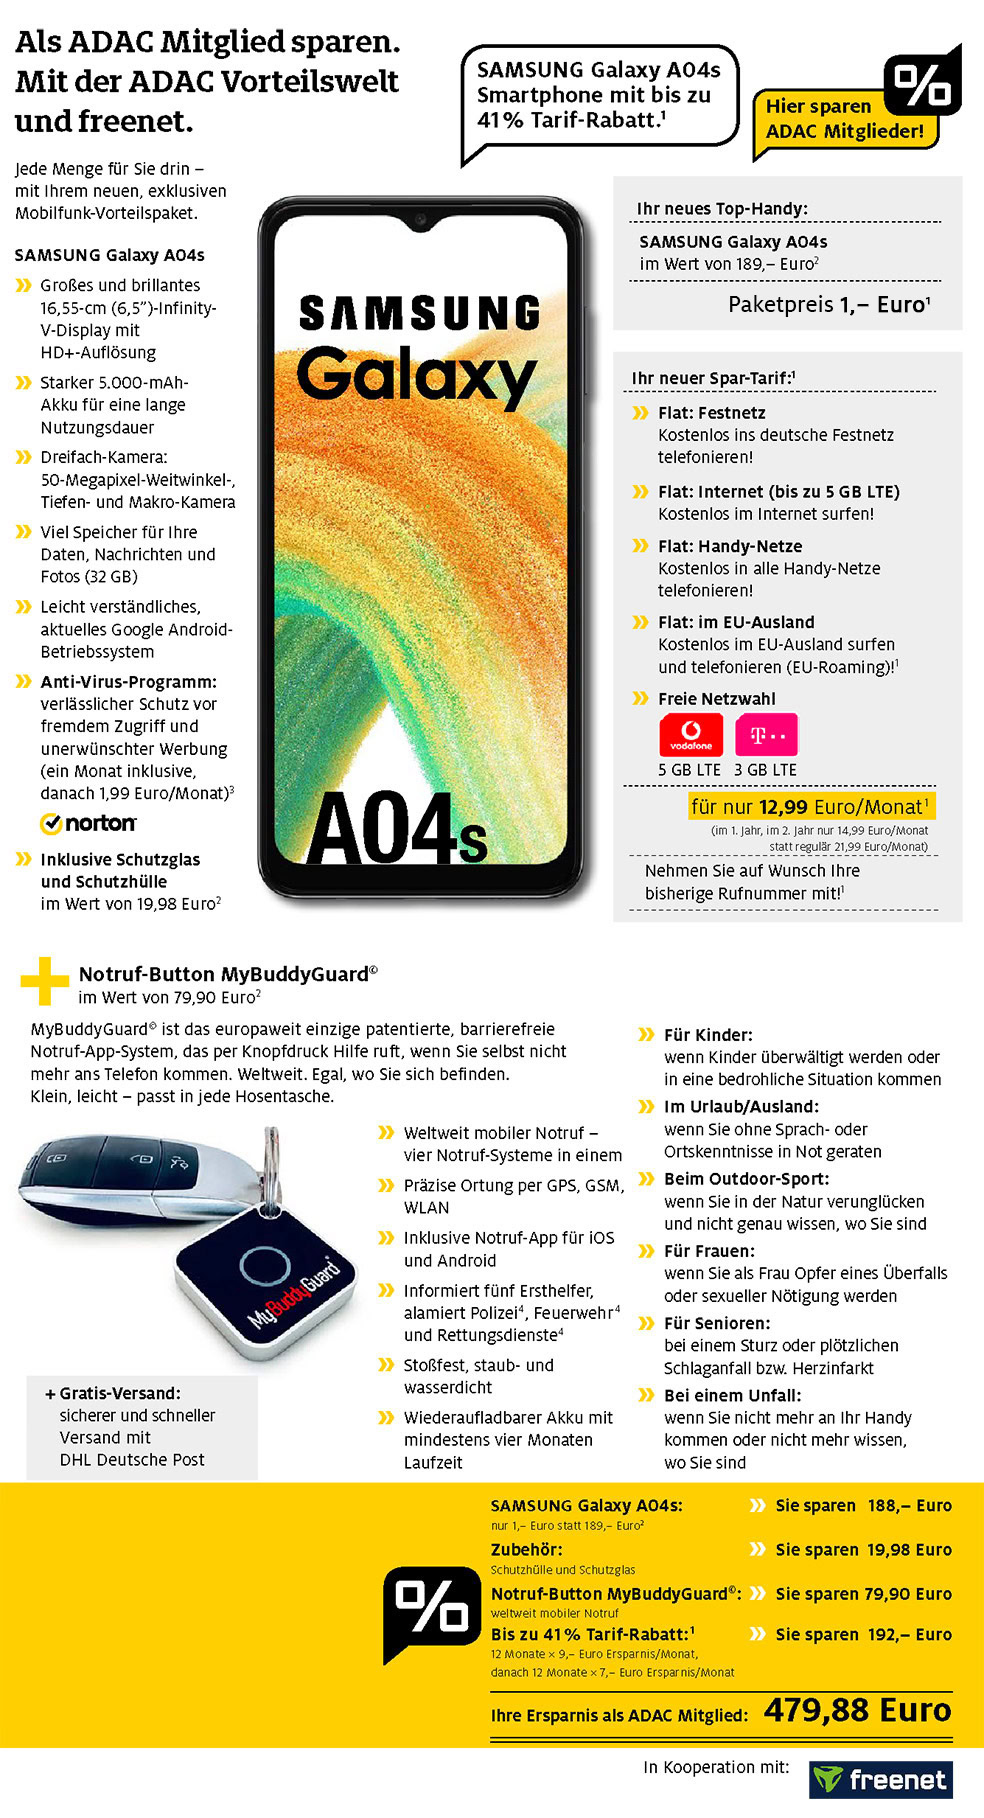 Für nur 1 €*: Samsung Galaxy A04s + Zubehör + My Buddy Guard + Handyvertrag mit ALL NET FLAT für 12,99 €/Monat im ersten Jahr